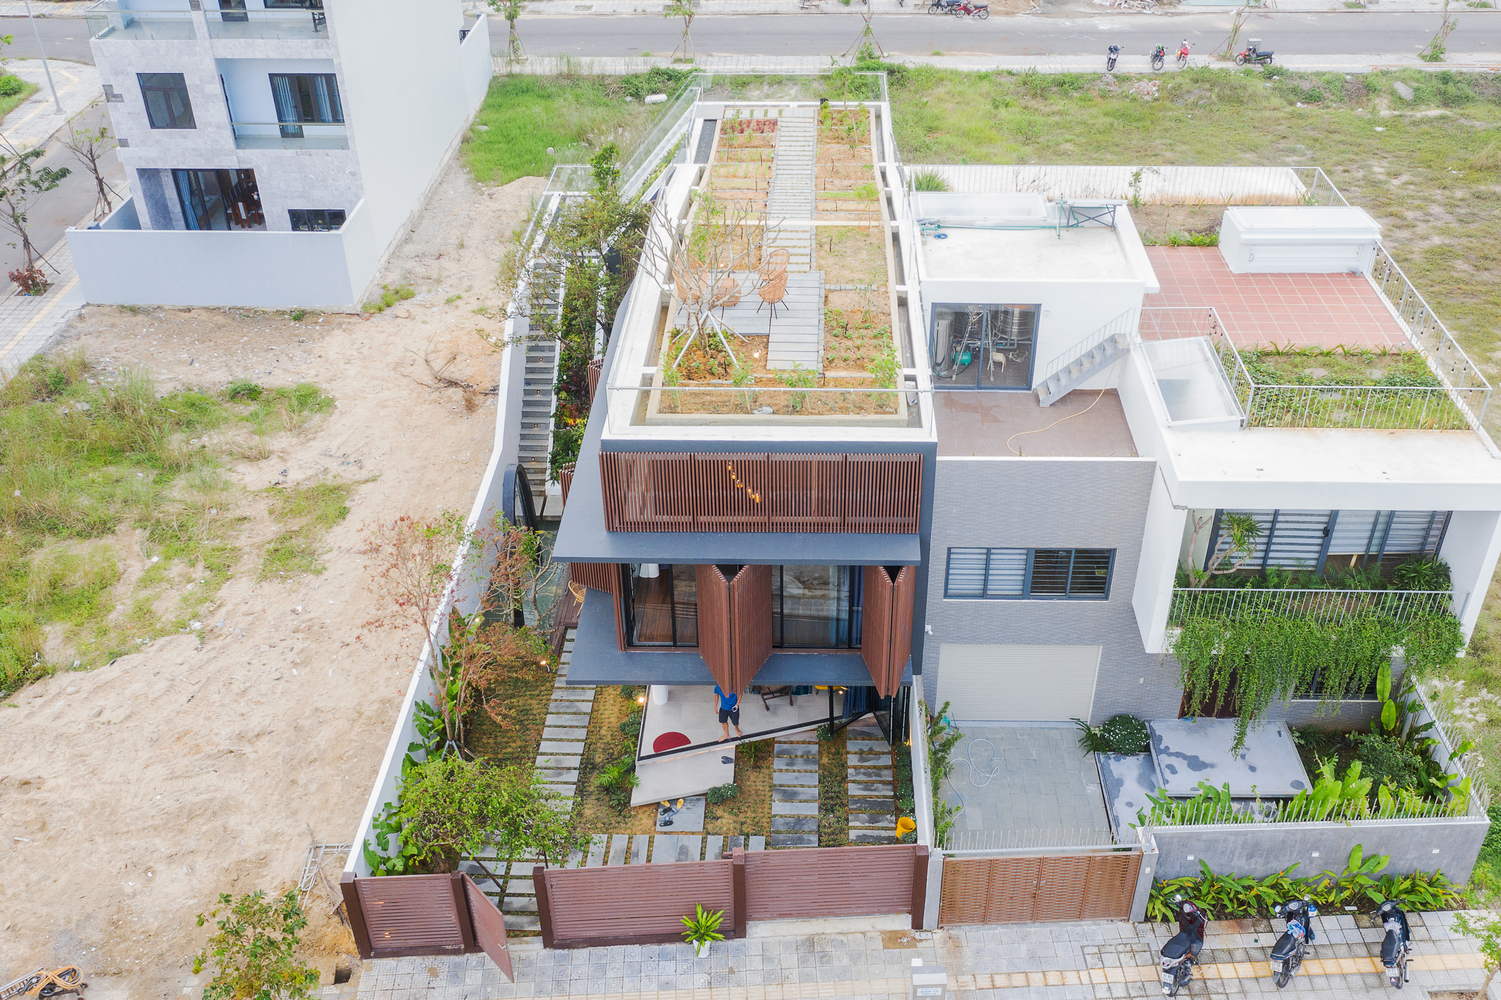 hình ảnh tầng thượng ngôi nhà trồng rau củ xanh tốt và sân chơi thoáng đãng